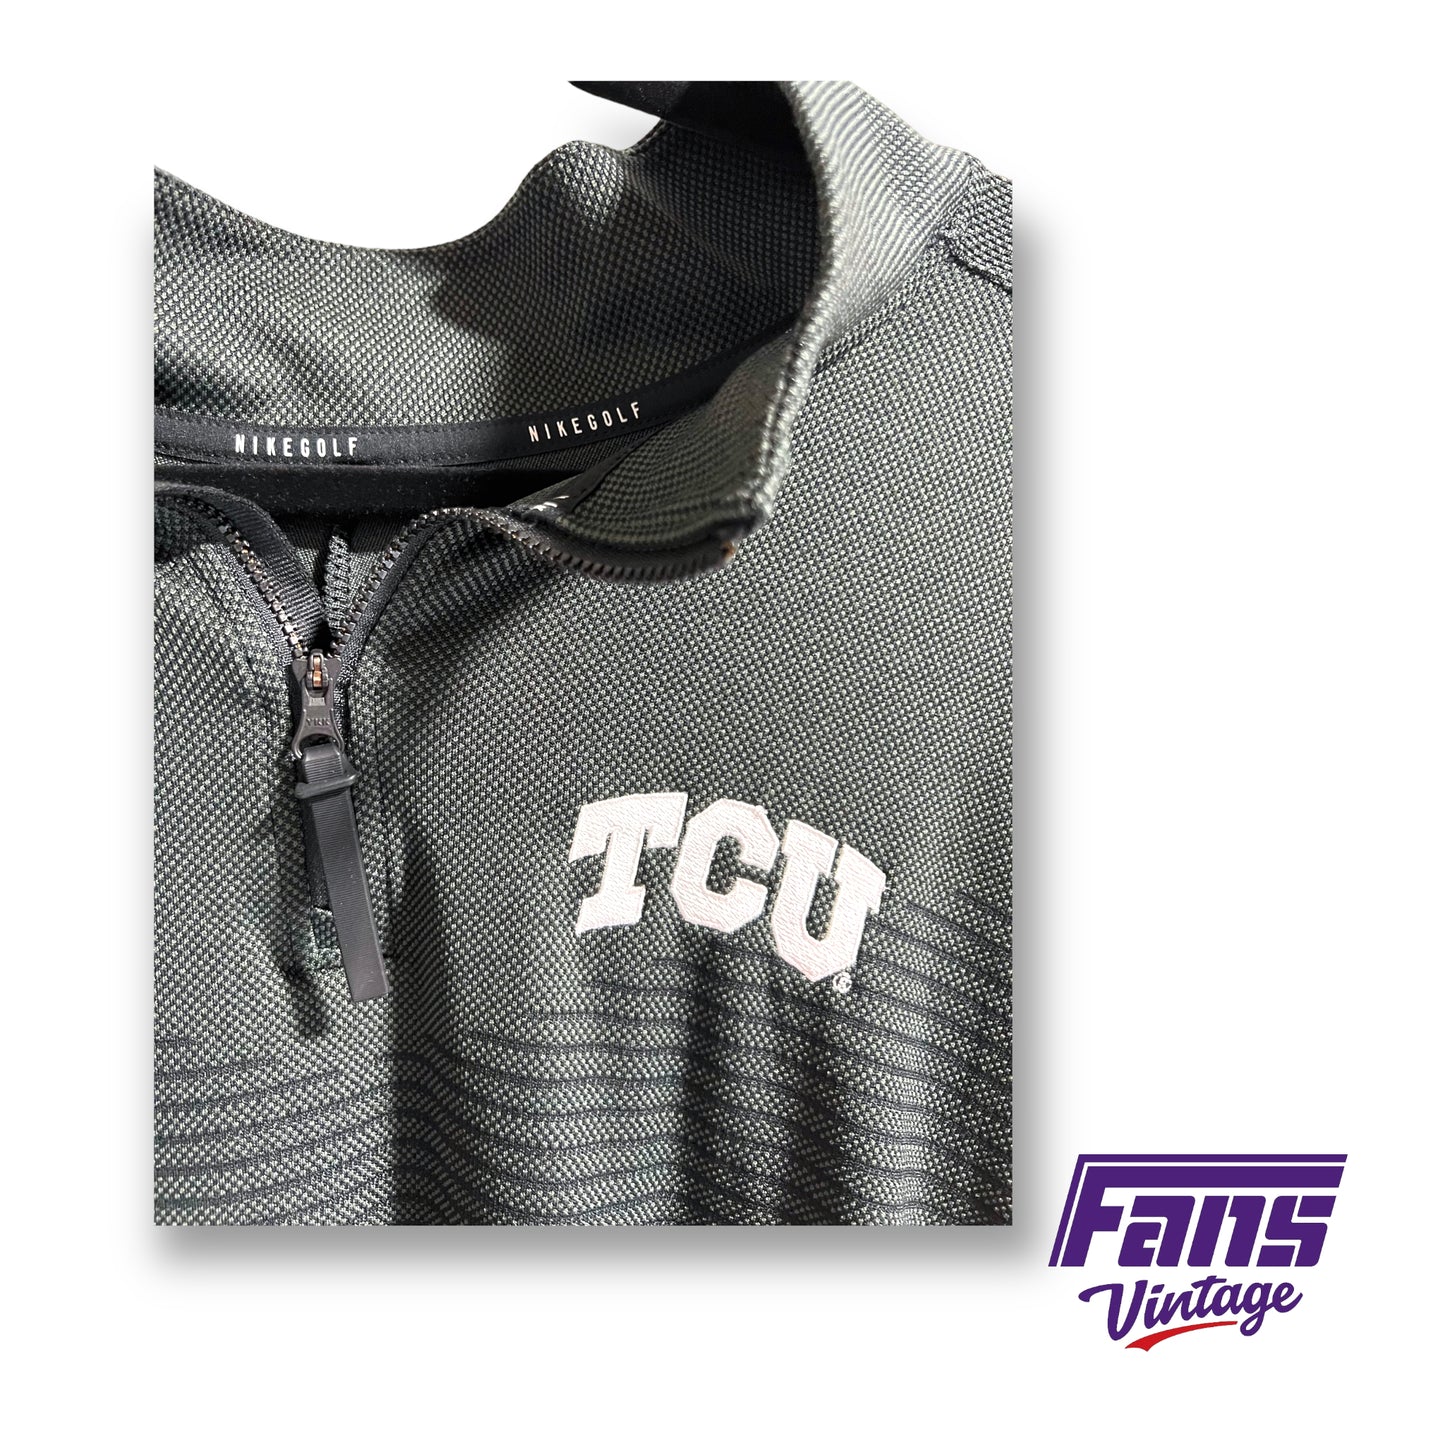 Nike TCU coach issued quarter-zip pullover